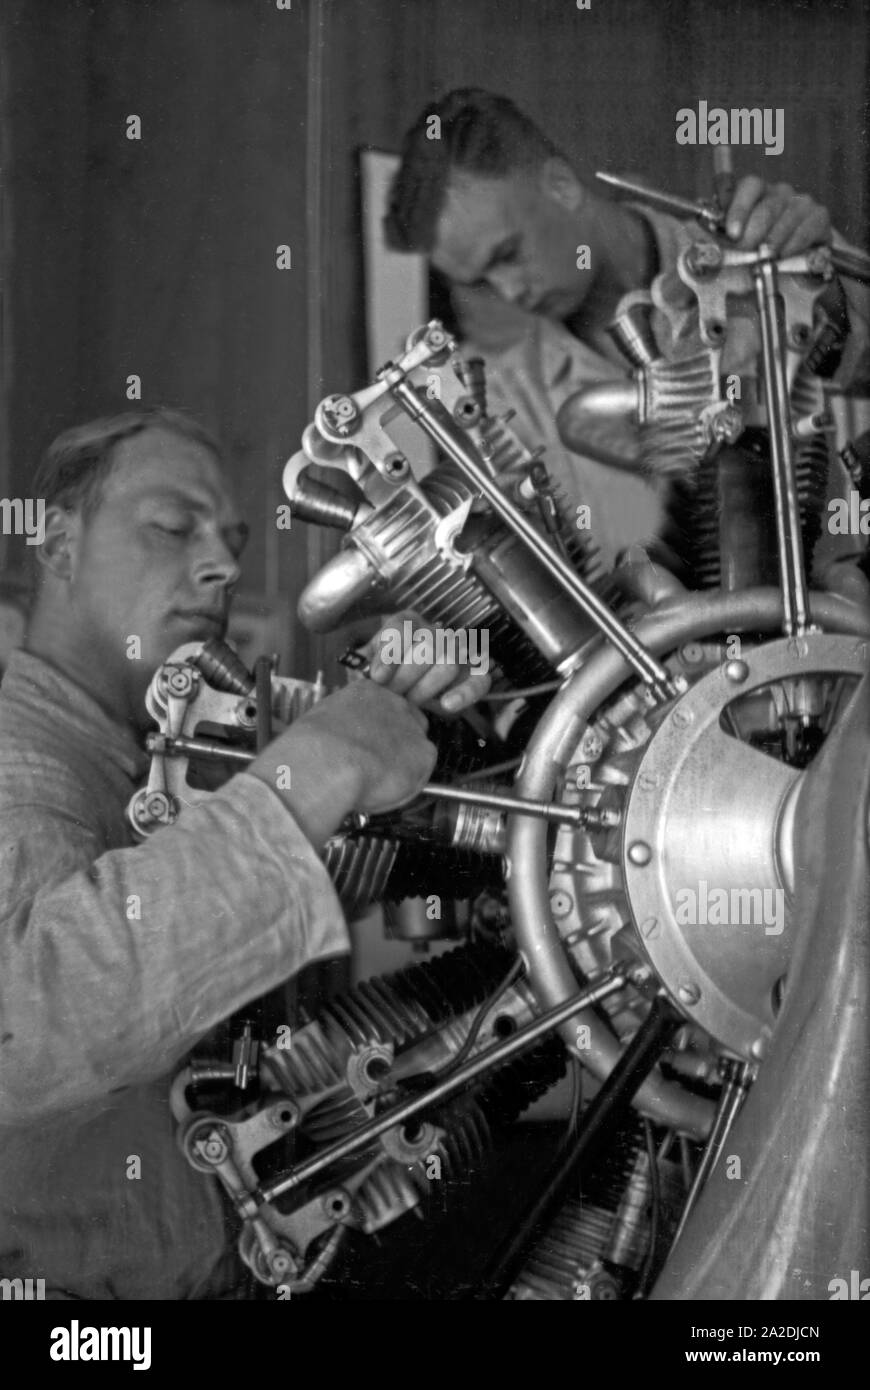 Zwei Mechaniker schrauben an einem Flugzeugmotor bei der Flieger Ausbildungsstelle Schönwalde, Deutschland, 1930er Jahre. Two mechanics srewing an airplane engine, Germany 1930s. Stock Photo